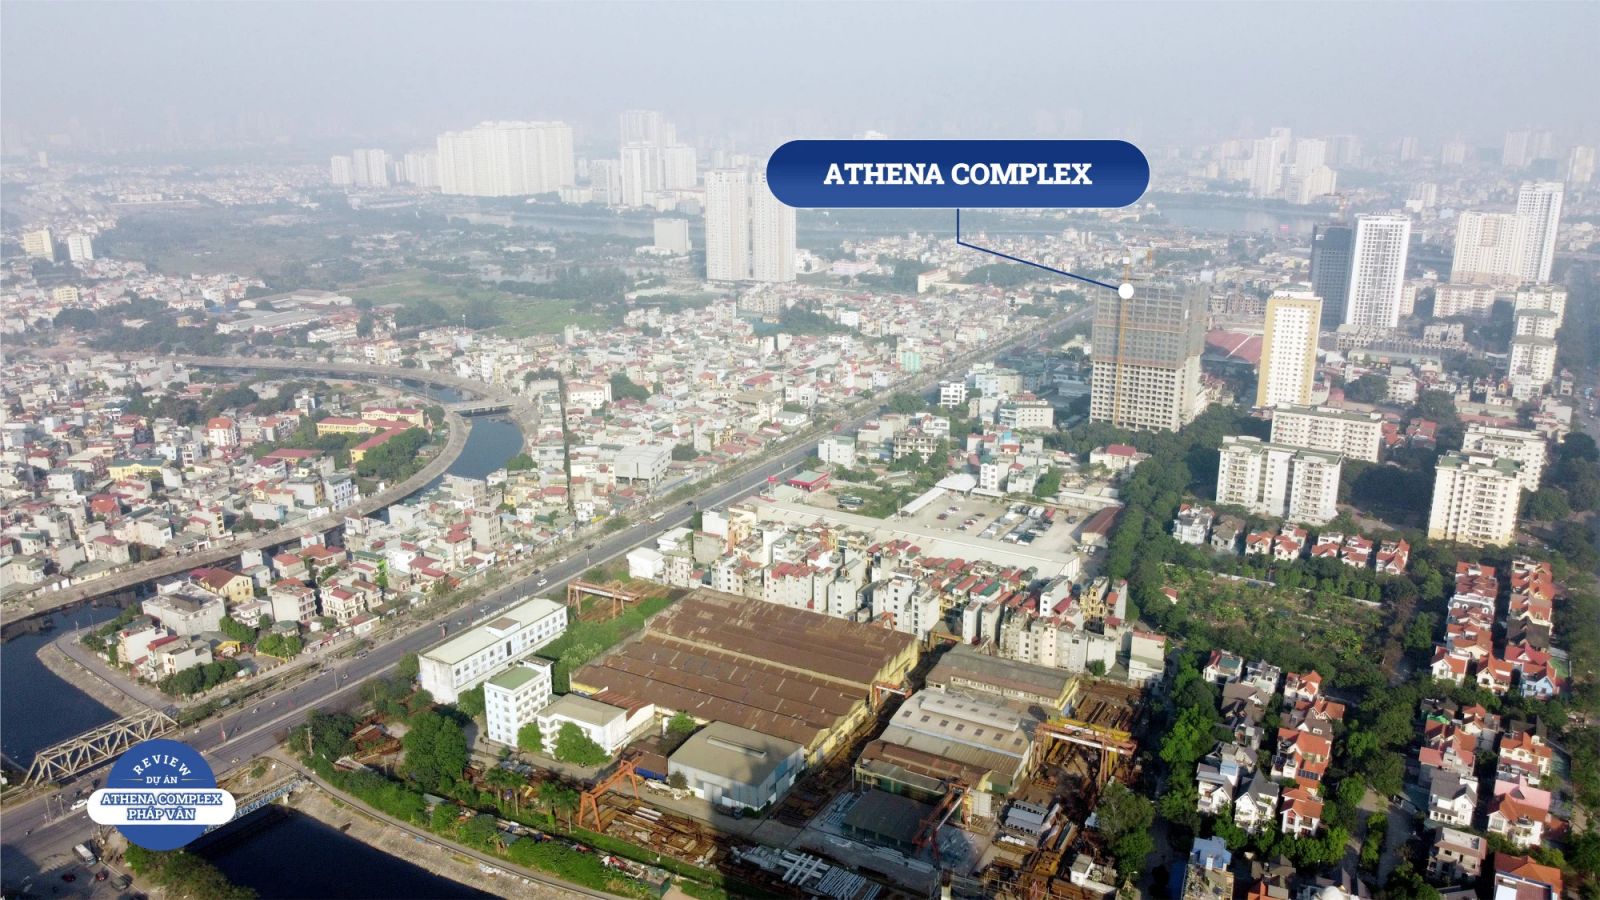 Athena Complex Pháp Vân hứa hẹn sẽ là dự án trọng điểm phía Nam Hà Nội.